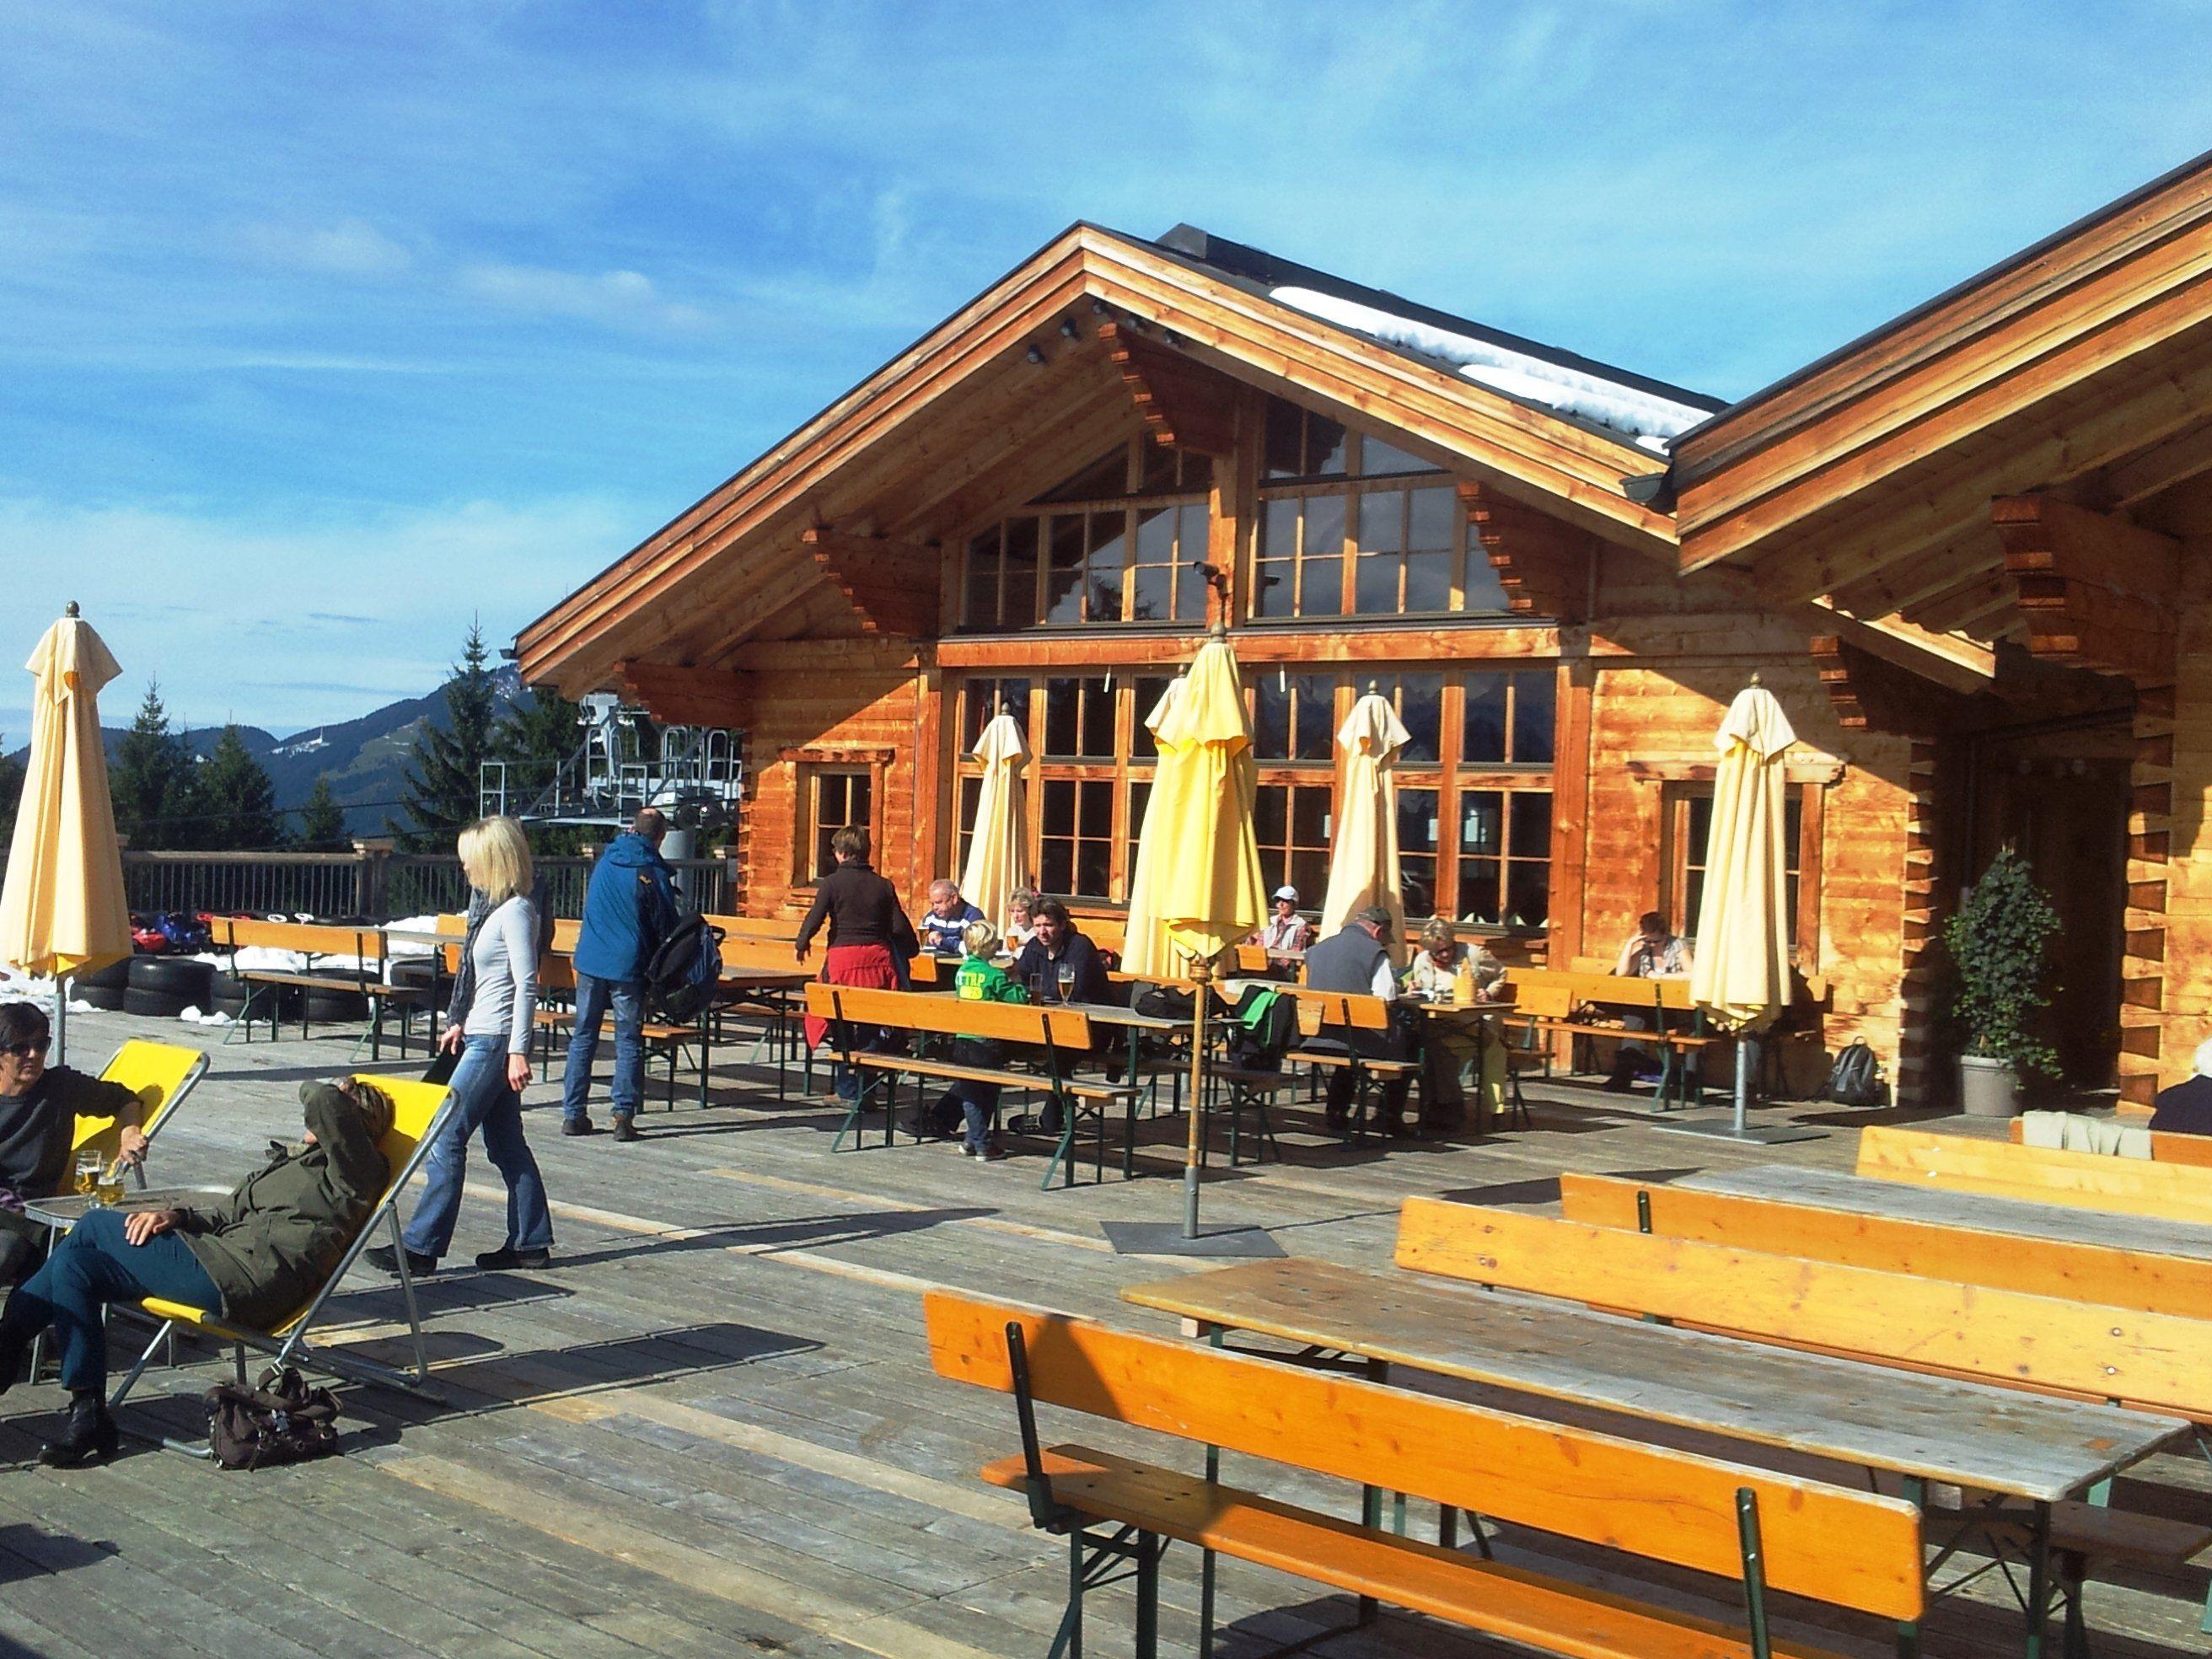 Ab 3. April startet die Muttersbergseilbahn und der Alpengasthof ins Frühjahr 2015